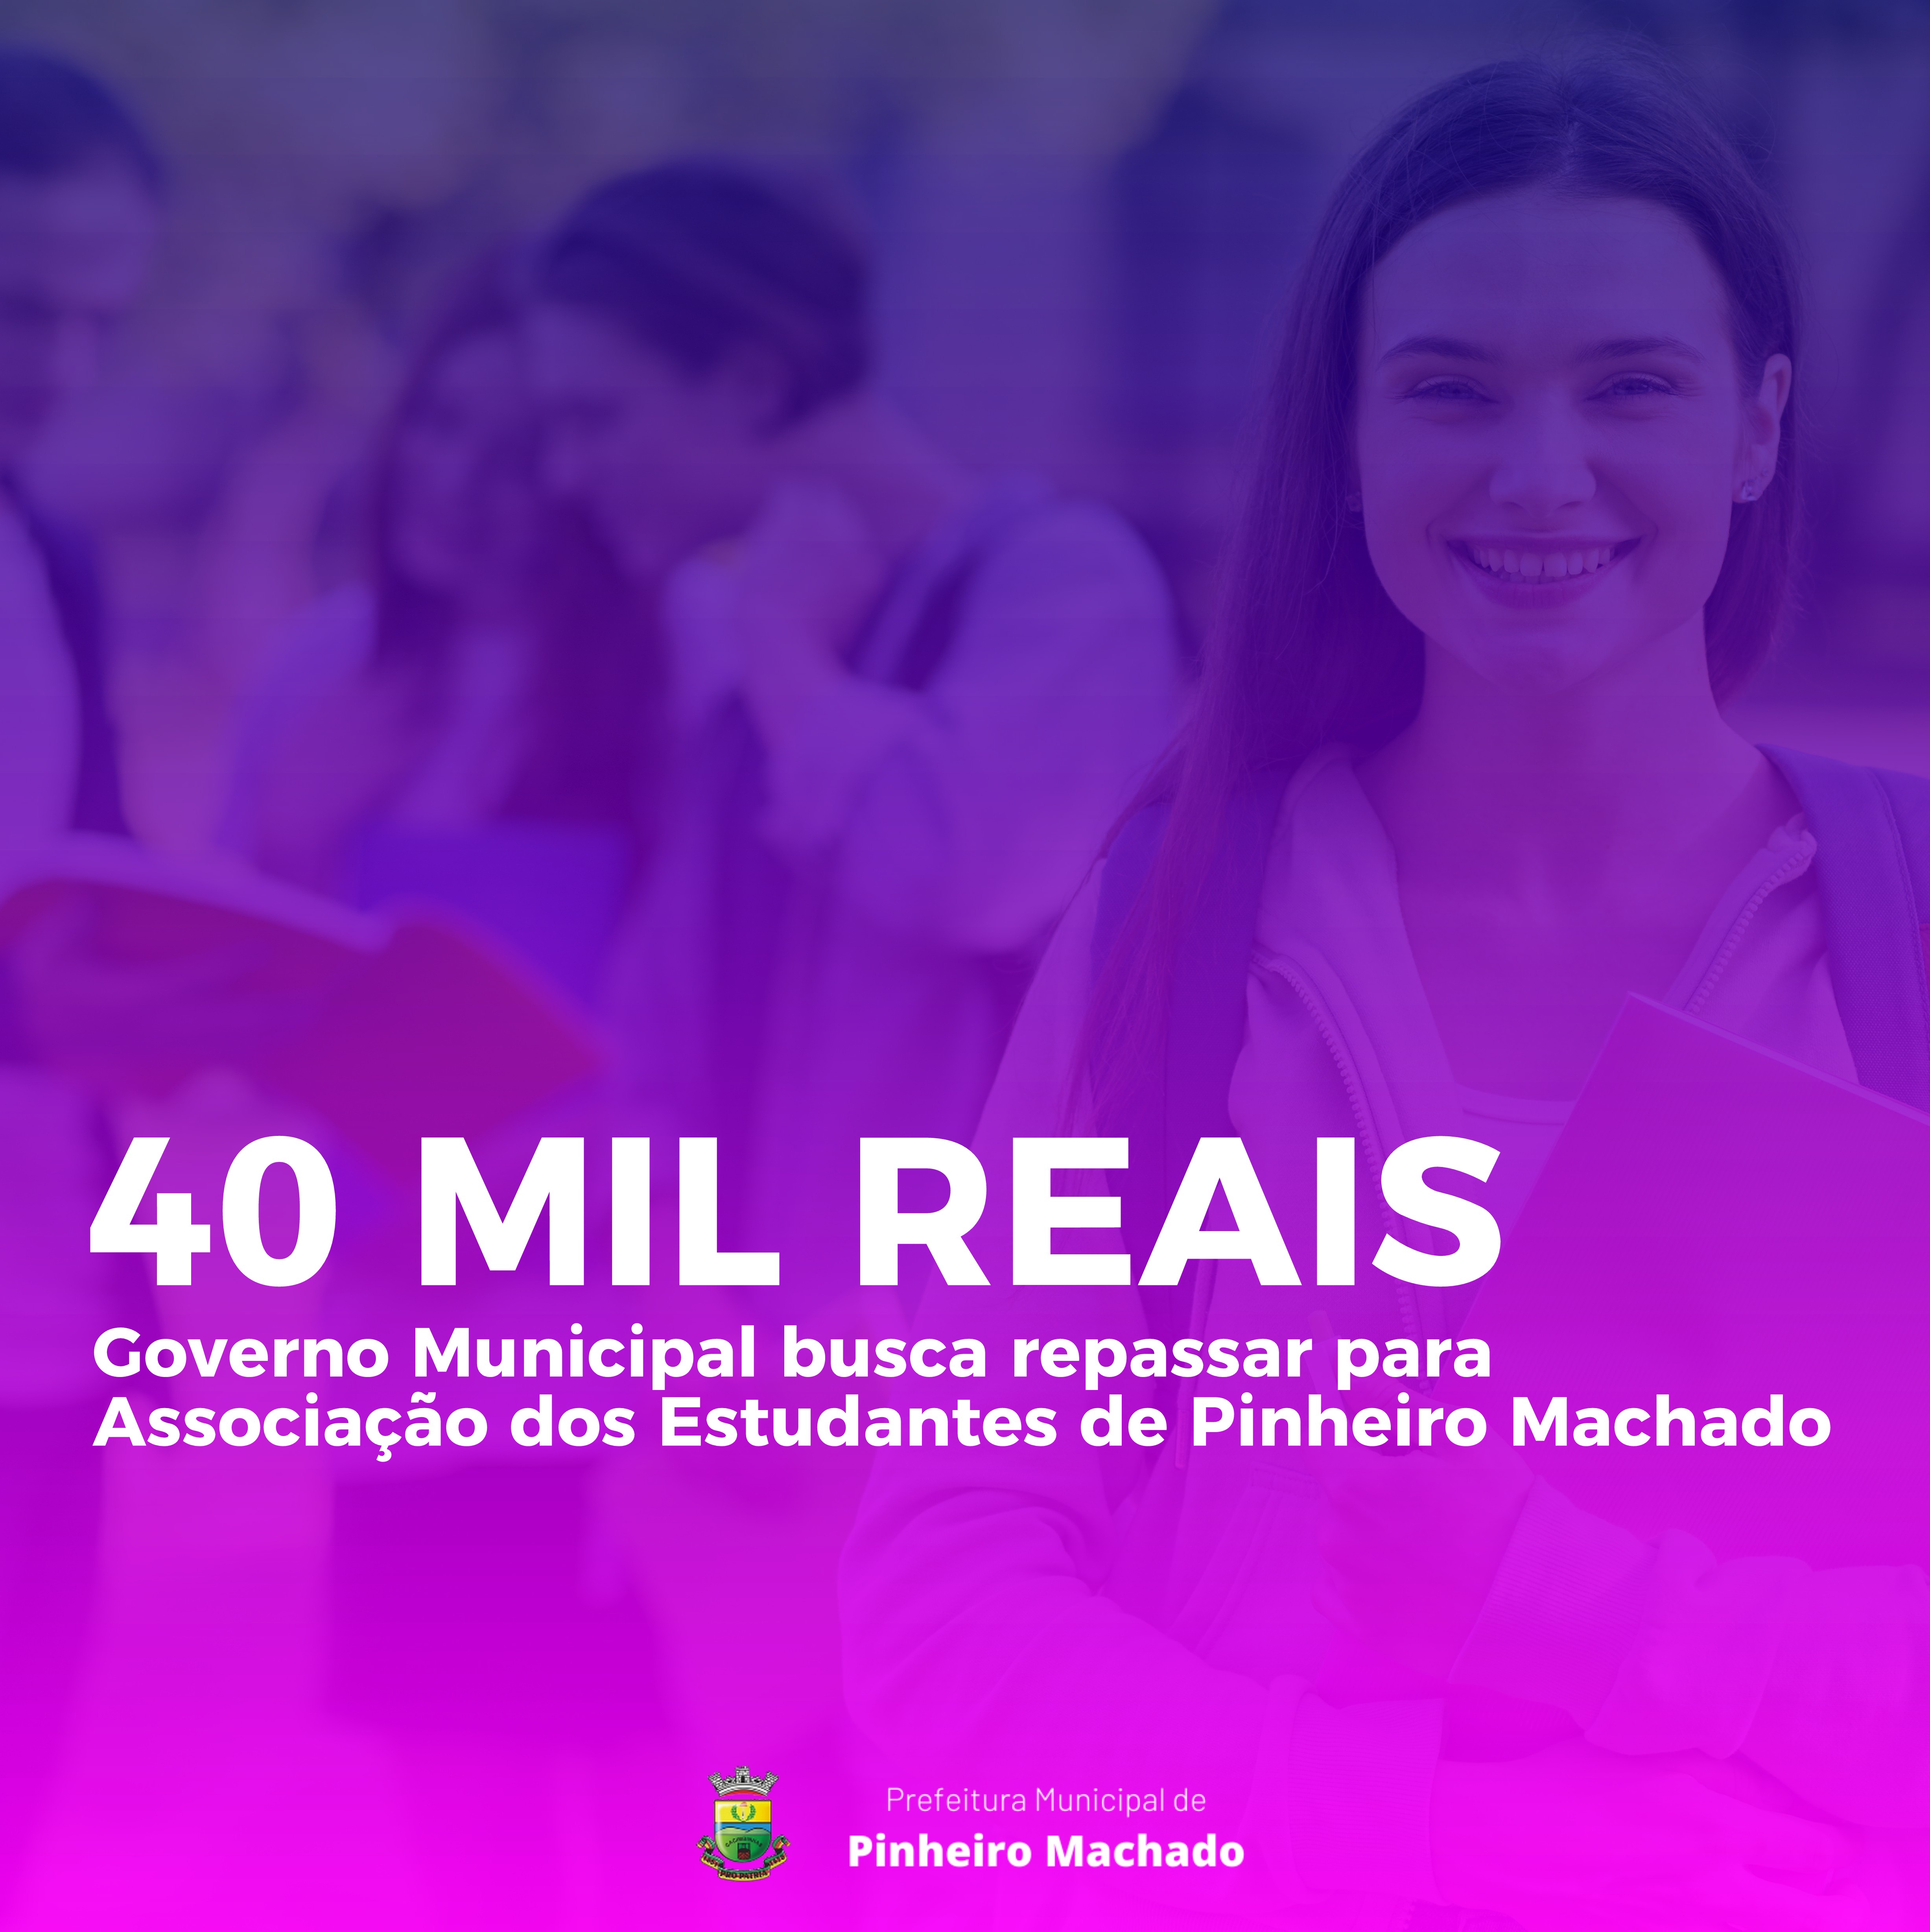 Governo Municipal busca repassar 40 mil reais para Associação dos Estudantes de Pinheiro Machado